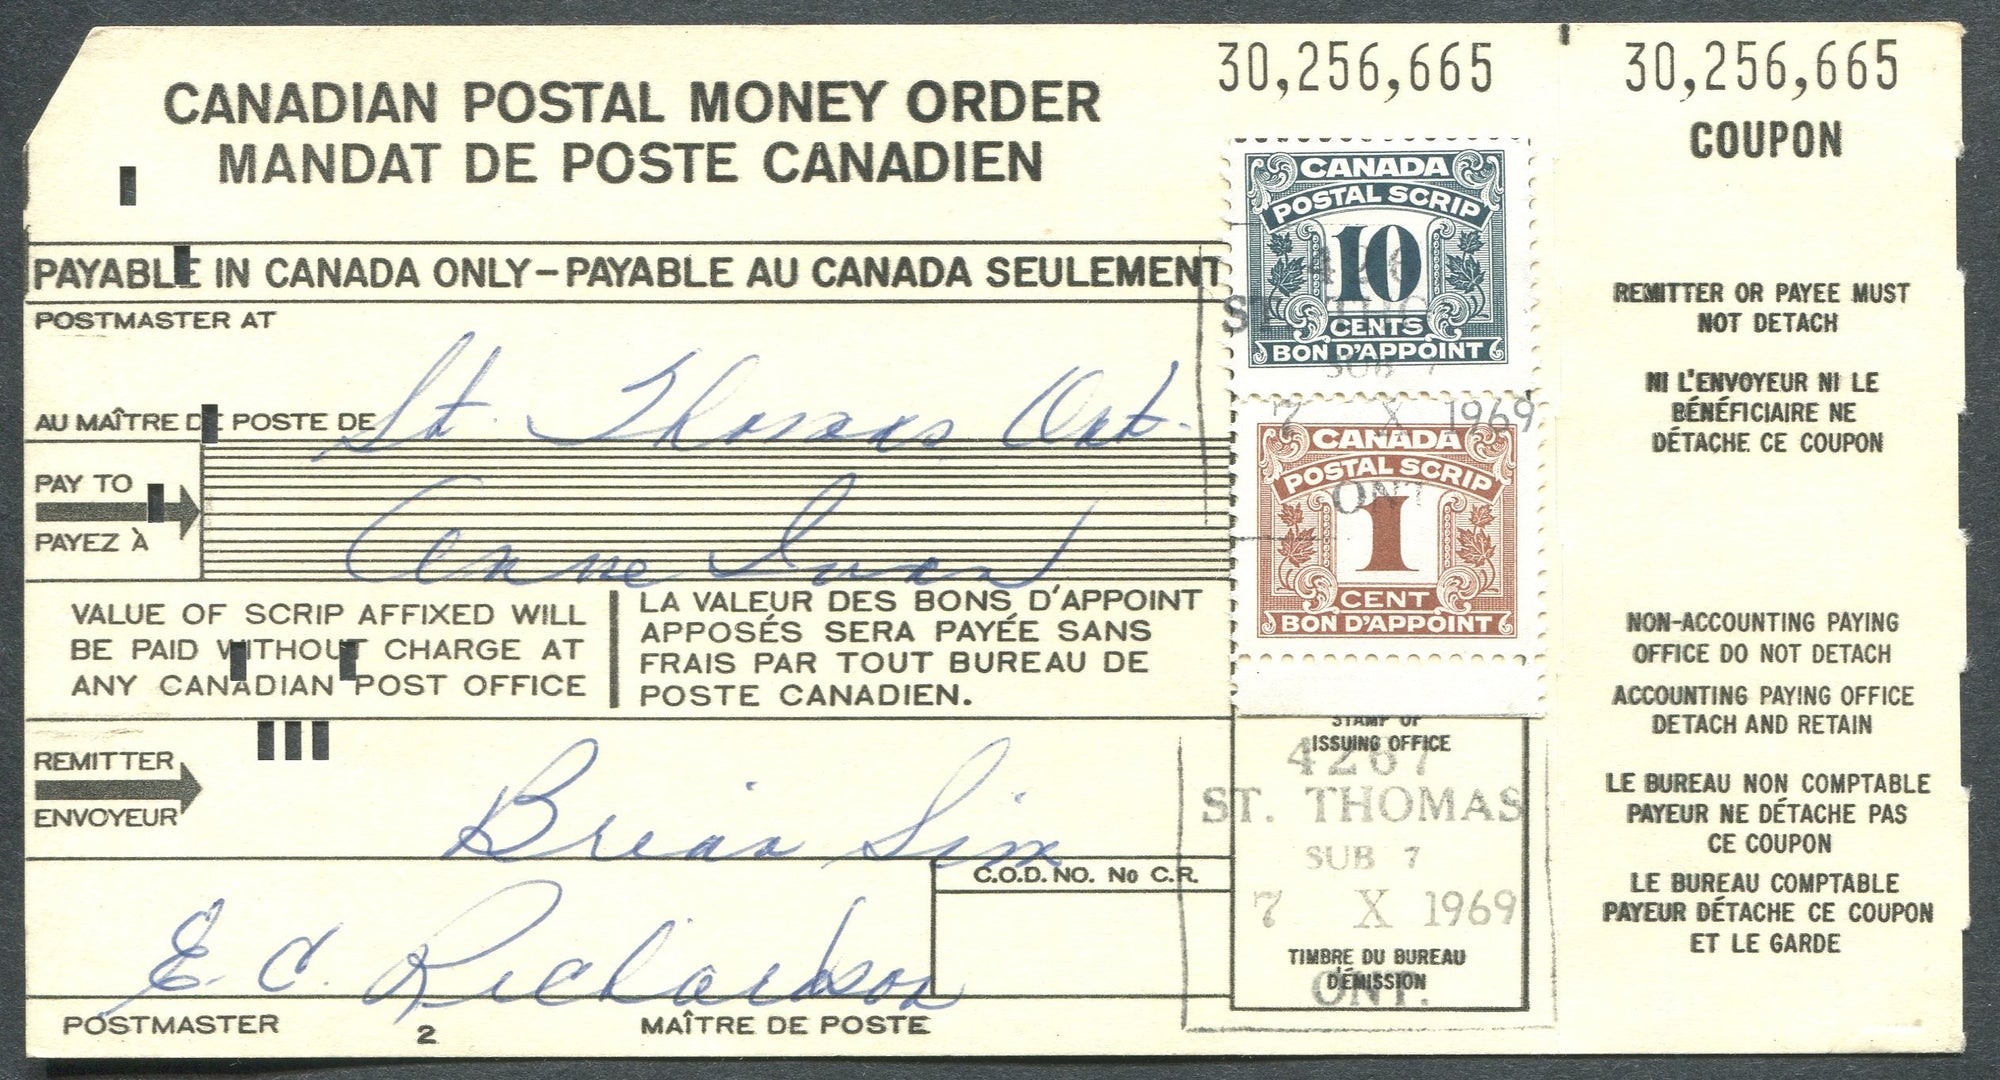 0455FD2003 - FPS23, FPS32 - Used on Canadian Postal Money Order